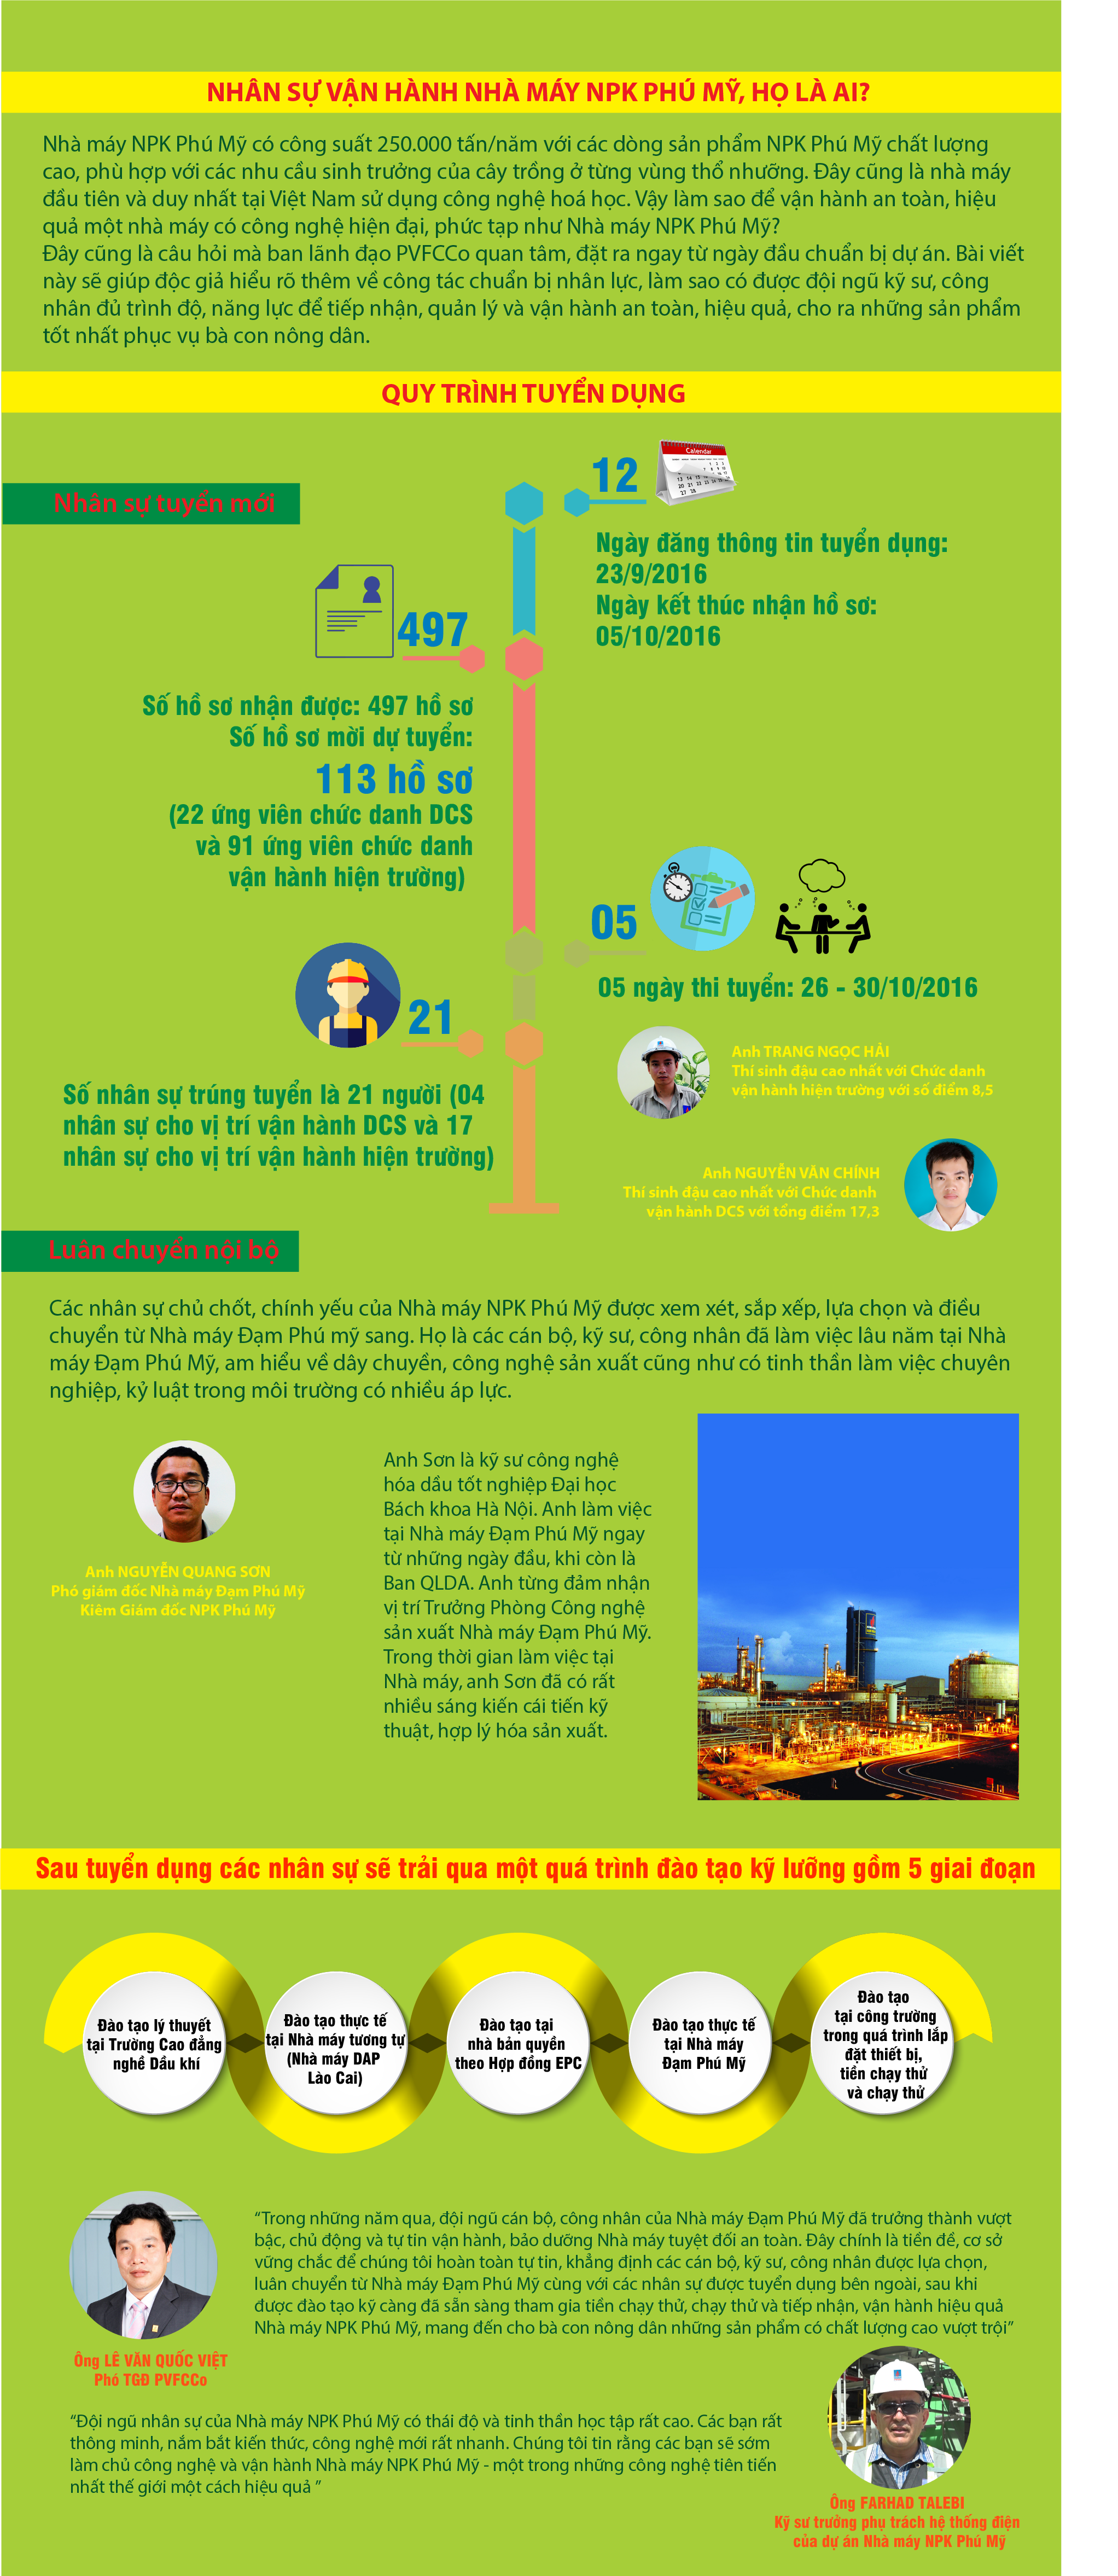 [Infographic] Quy trình tuyển dụng nhân sự vận hành NPK Phú Mỹ như thế nào?